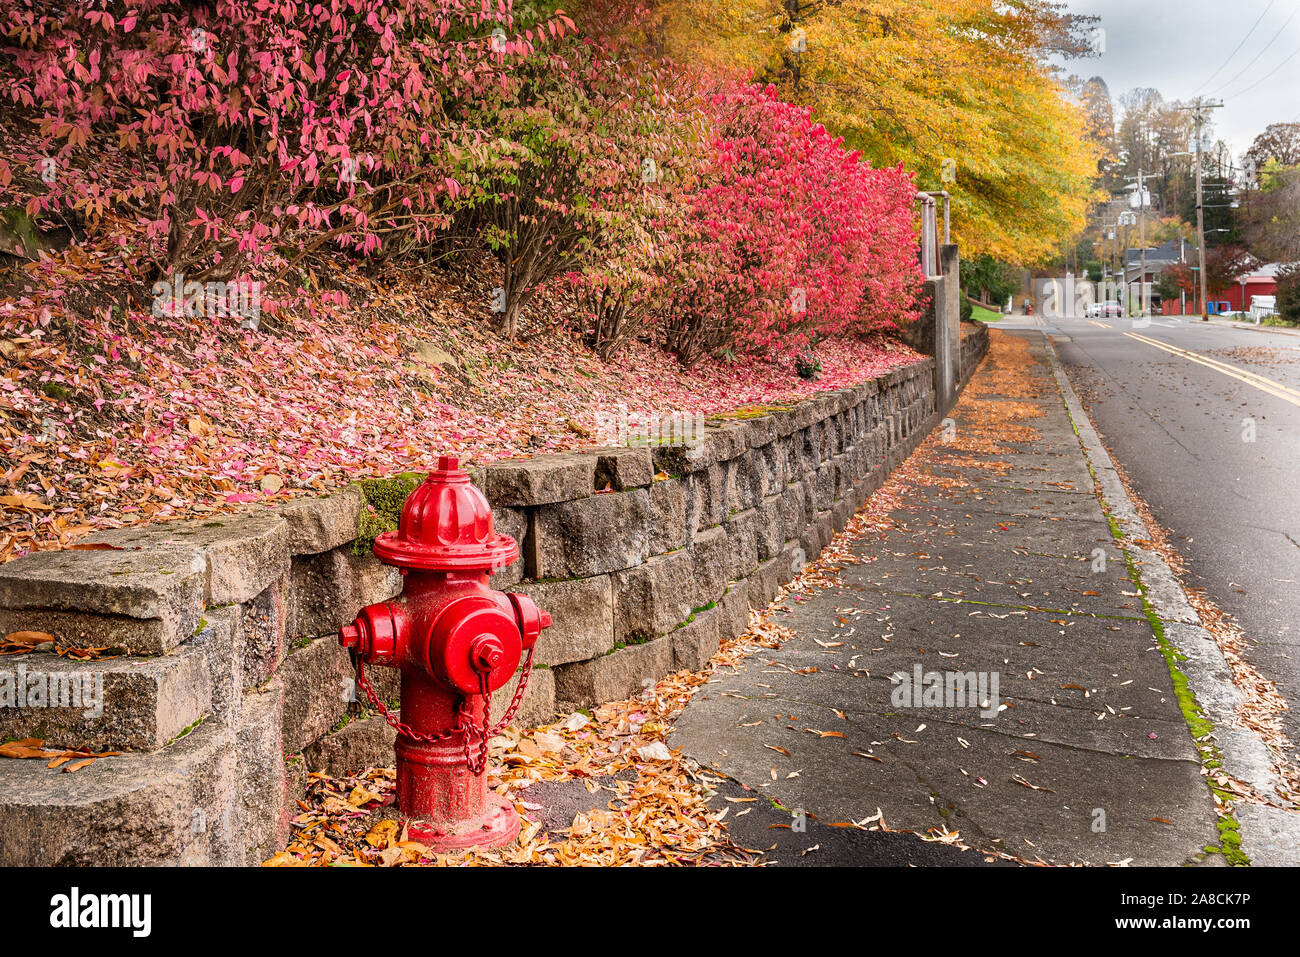 Un paysage d'automne colorés avec des roses et jaunes, plus un poteau incendie comme un point d'exclamation et des lignes directrices, à l'aide d'une paroi rocheuse, trottoir/street. Banque D'Images